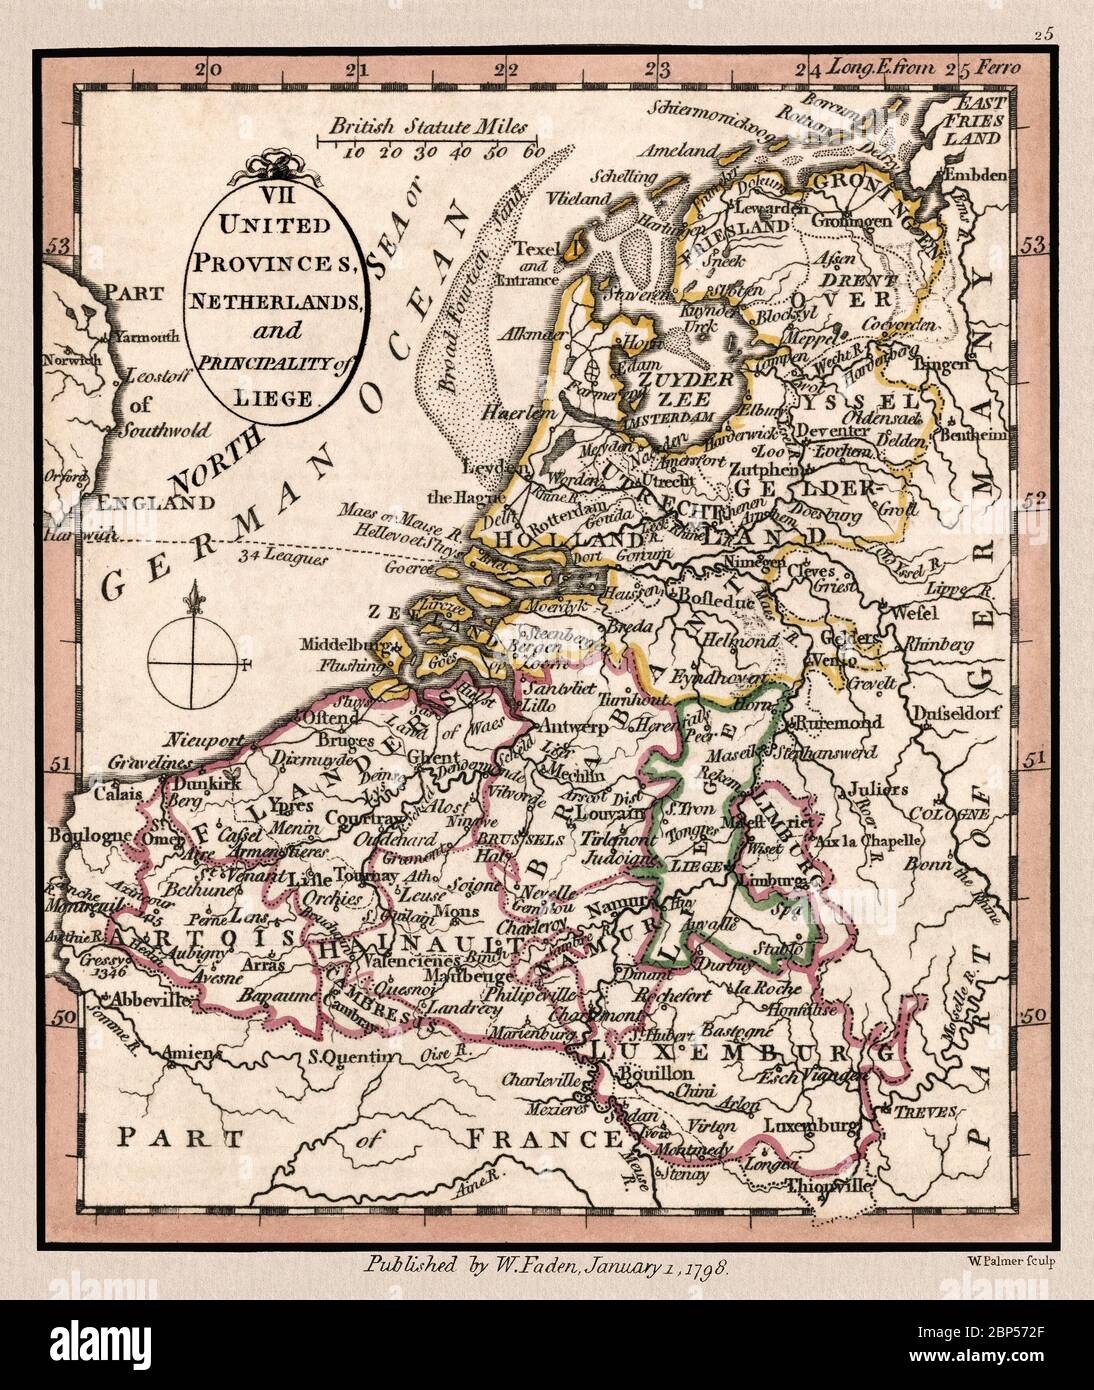 'Vereinigte Provinzen, Niederlande und Fürstentum Lüttich.' Karte zeigt geographische Abteilungen um 1798, Dies ist eine schön detaillierte historische Kartenwiedergabe. Original aus einem britischen Atlas, herausgegeben vom berühmten Kartographen William Faden. Stockfoto